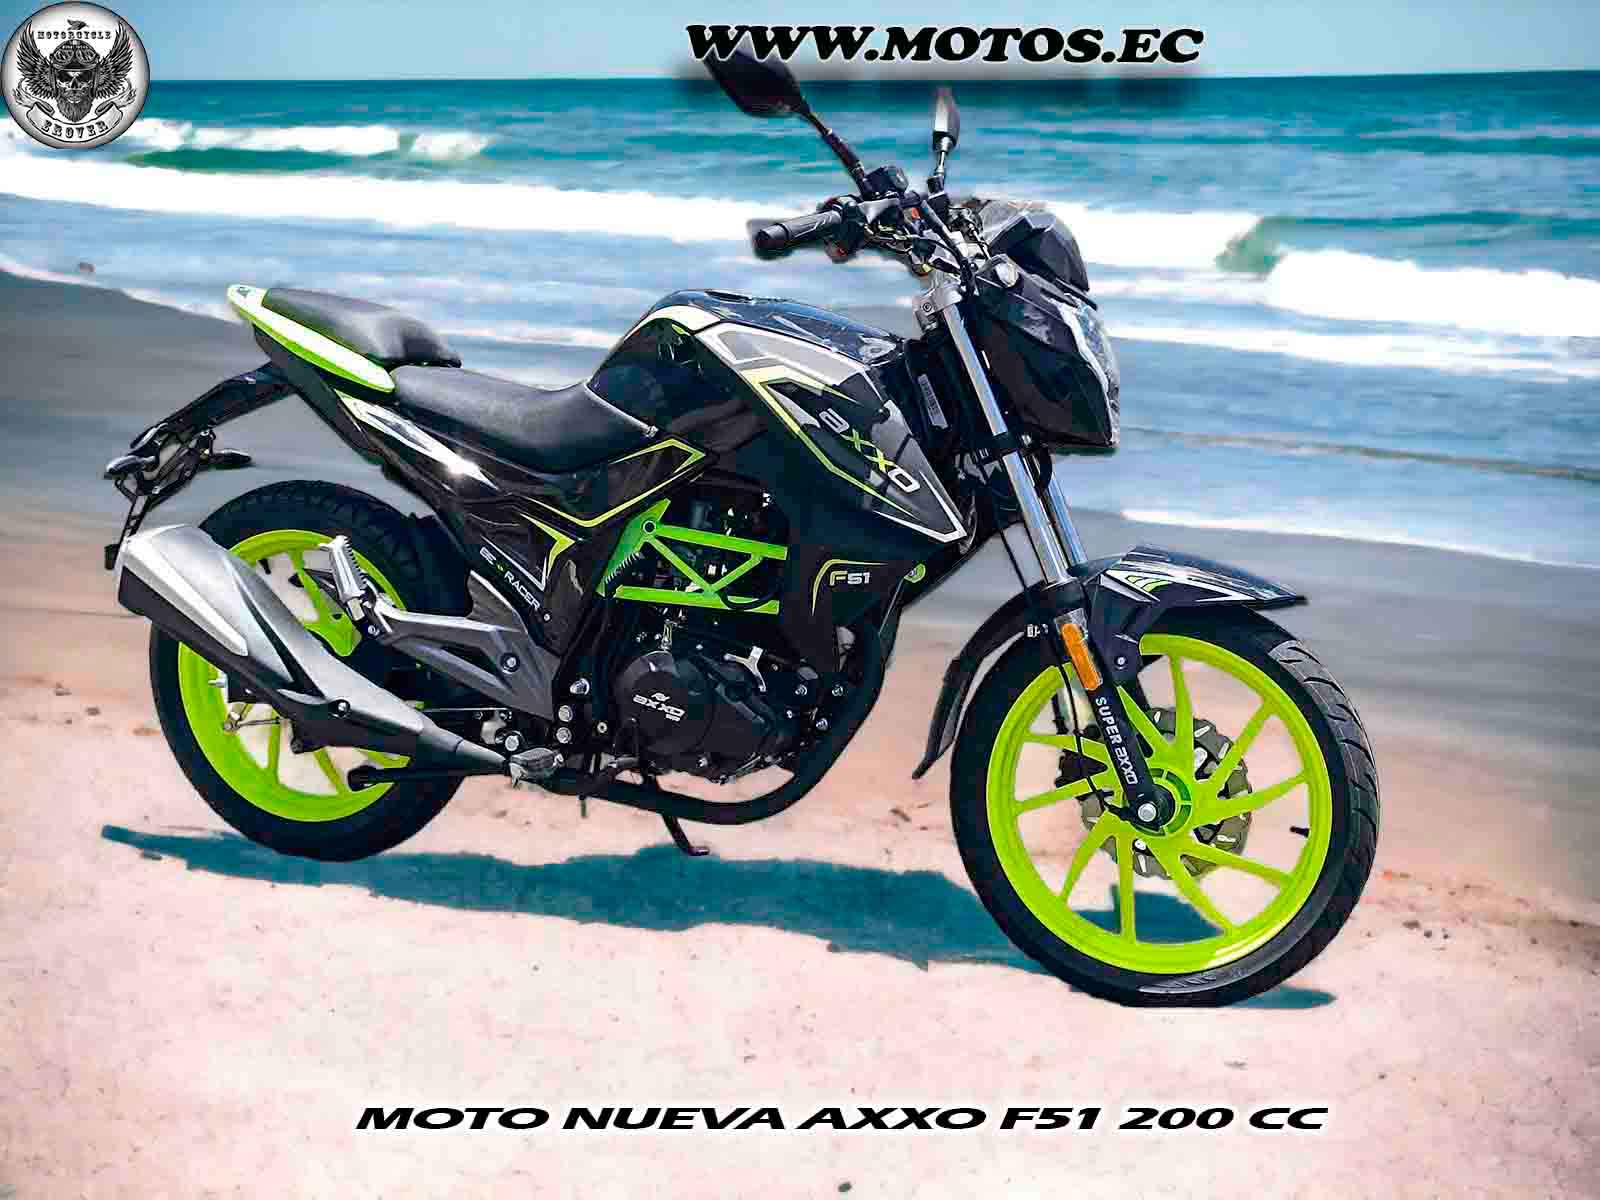 imagen de moto Motos Axxo F51 200